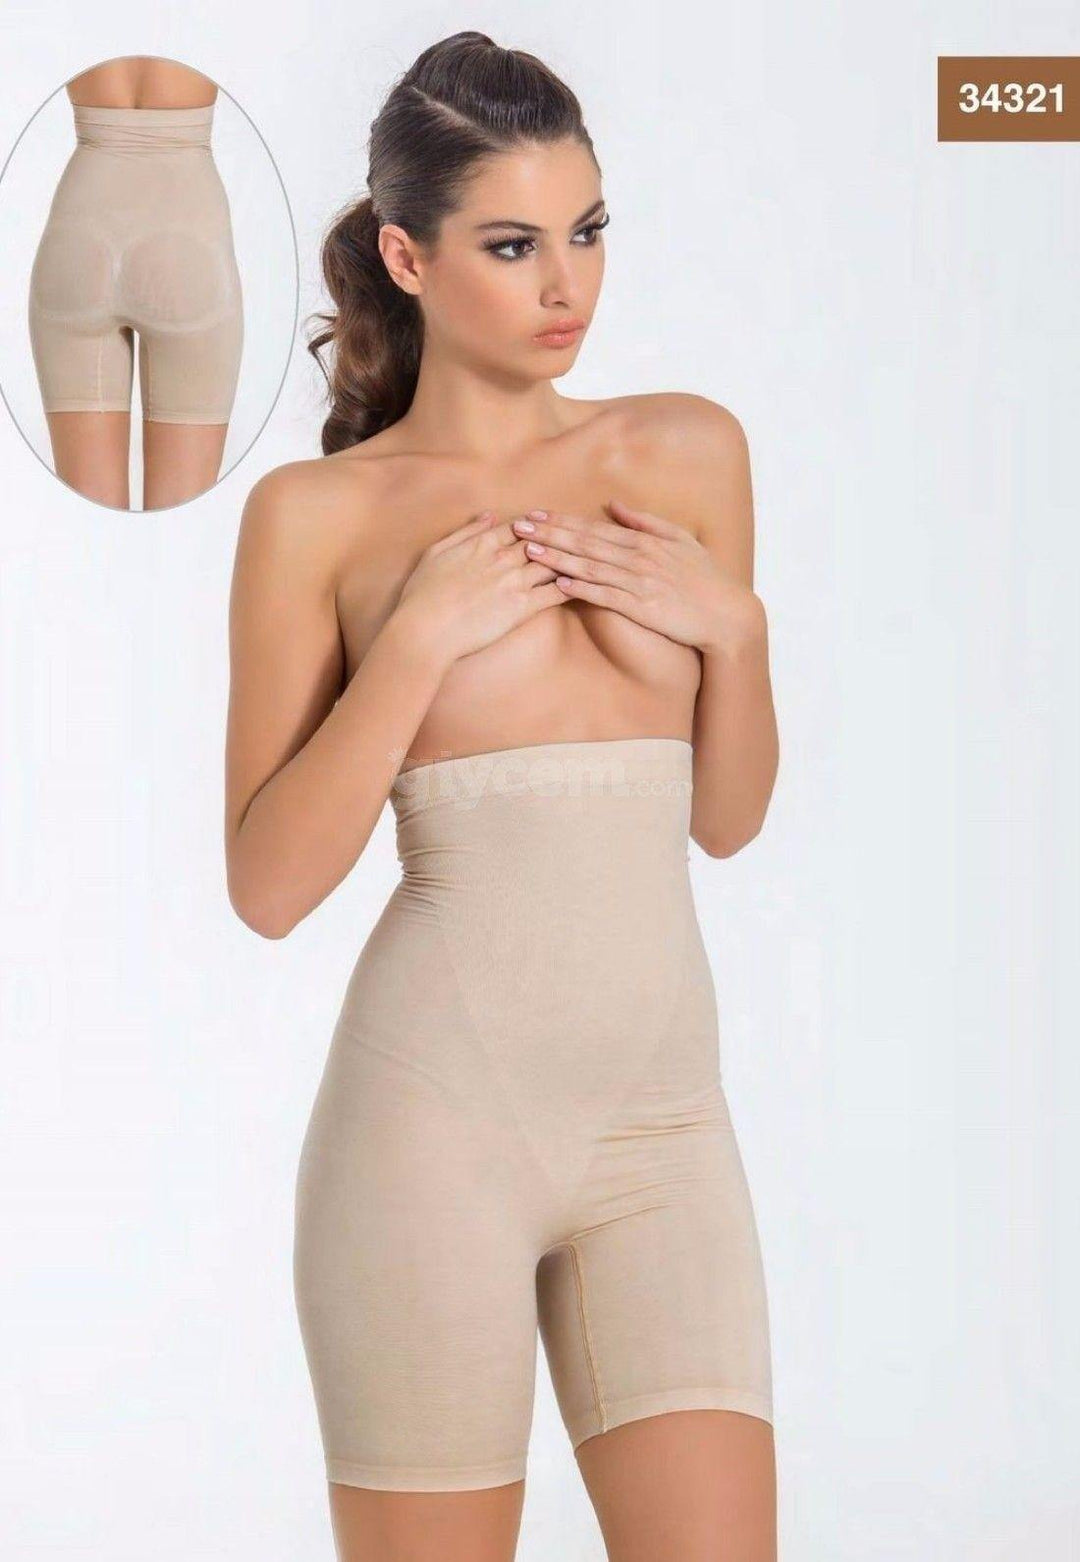 Miss Fit Body Korse Seamless Body Shaper Underwear - 1255